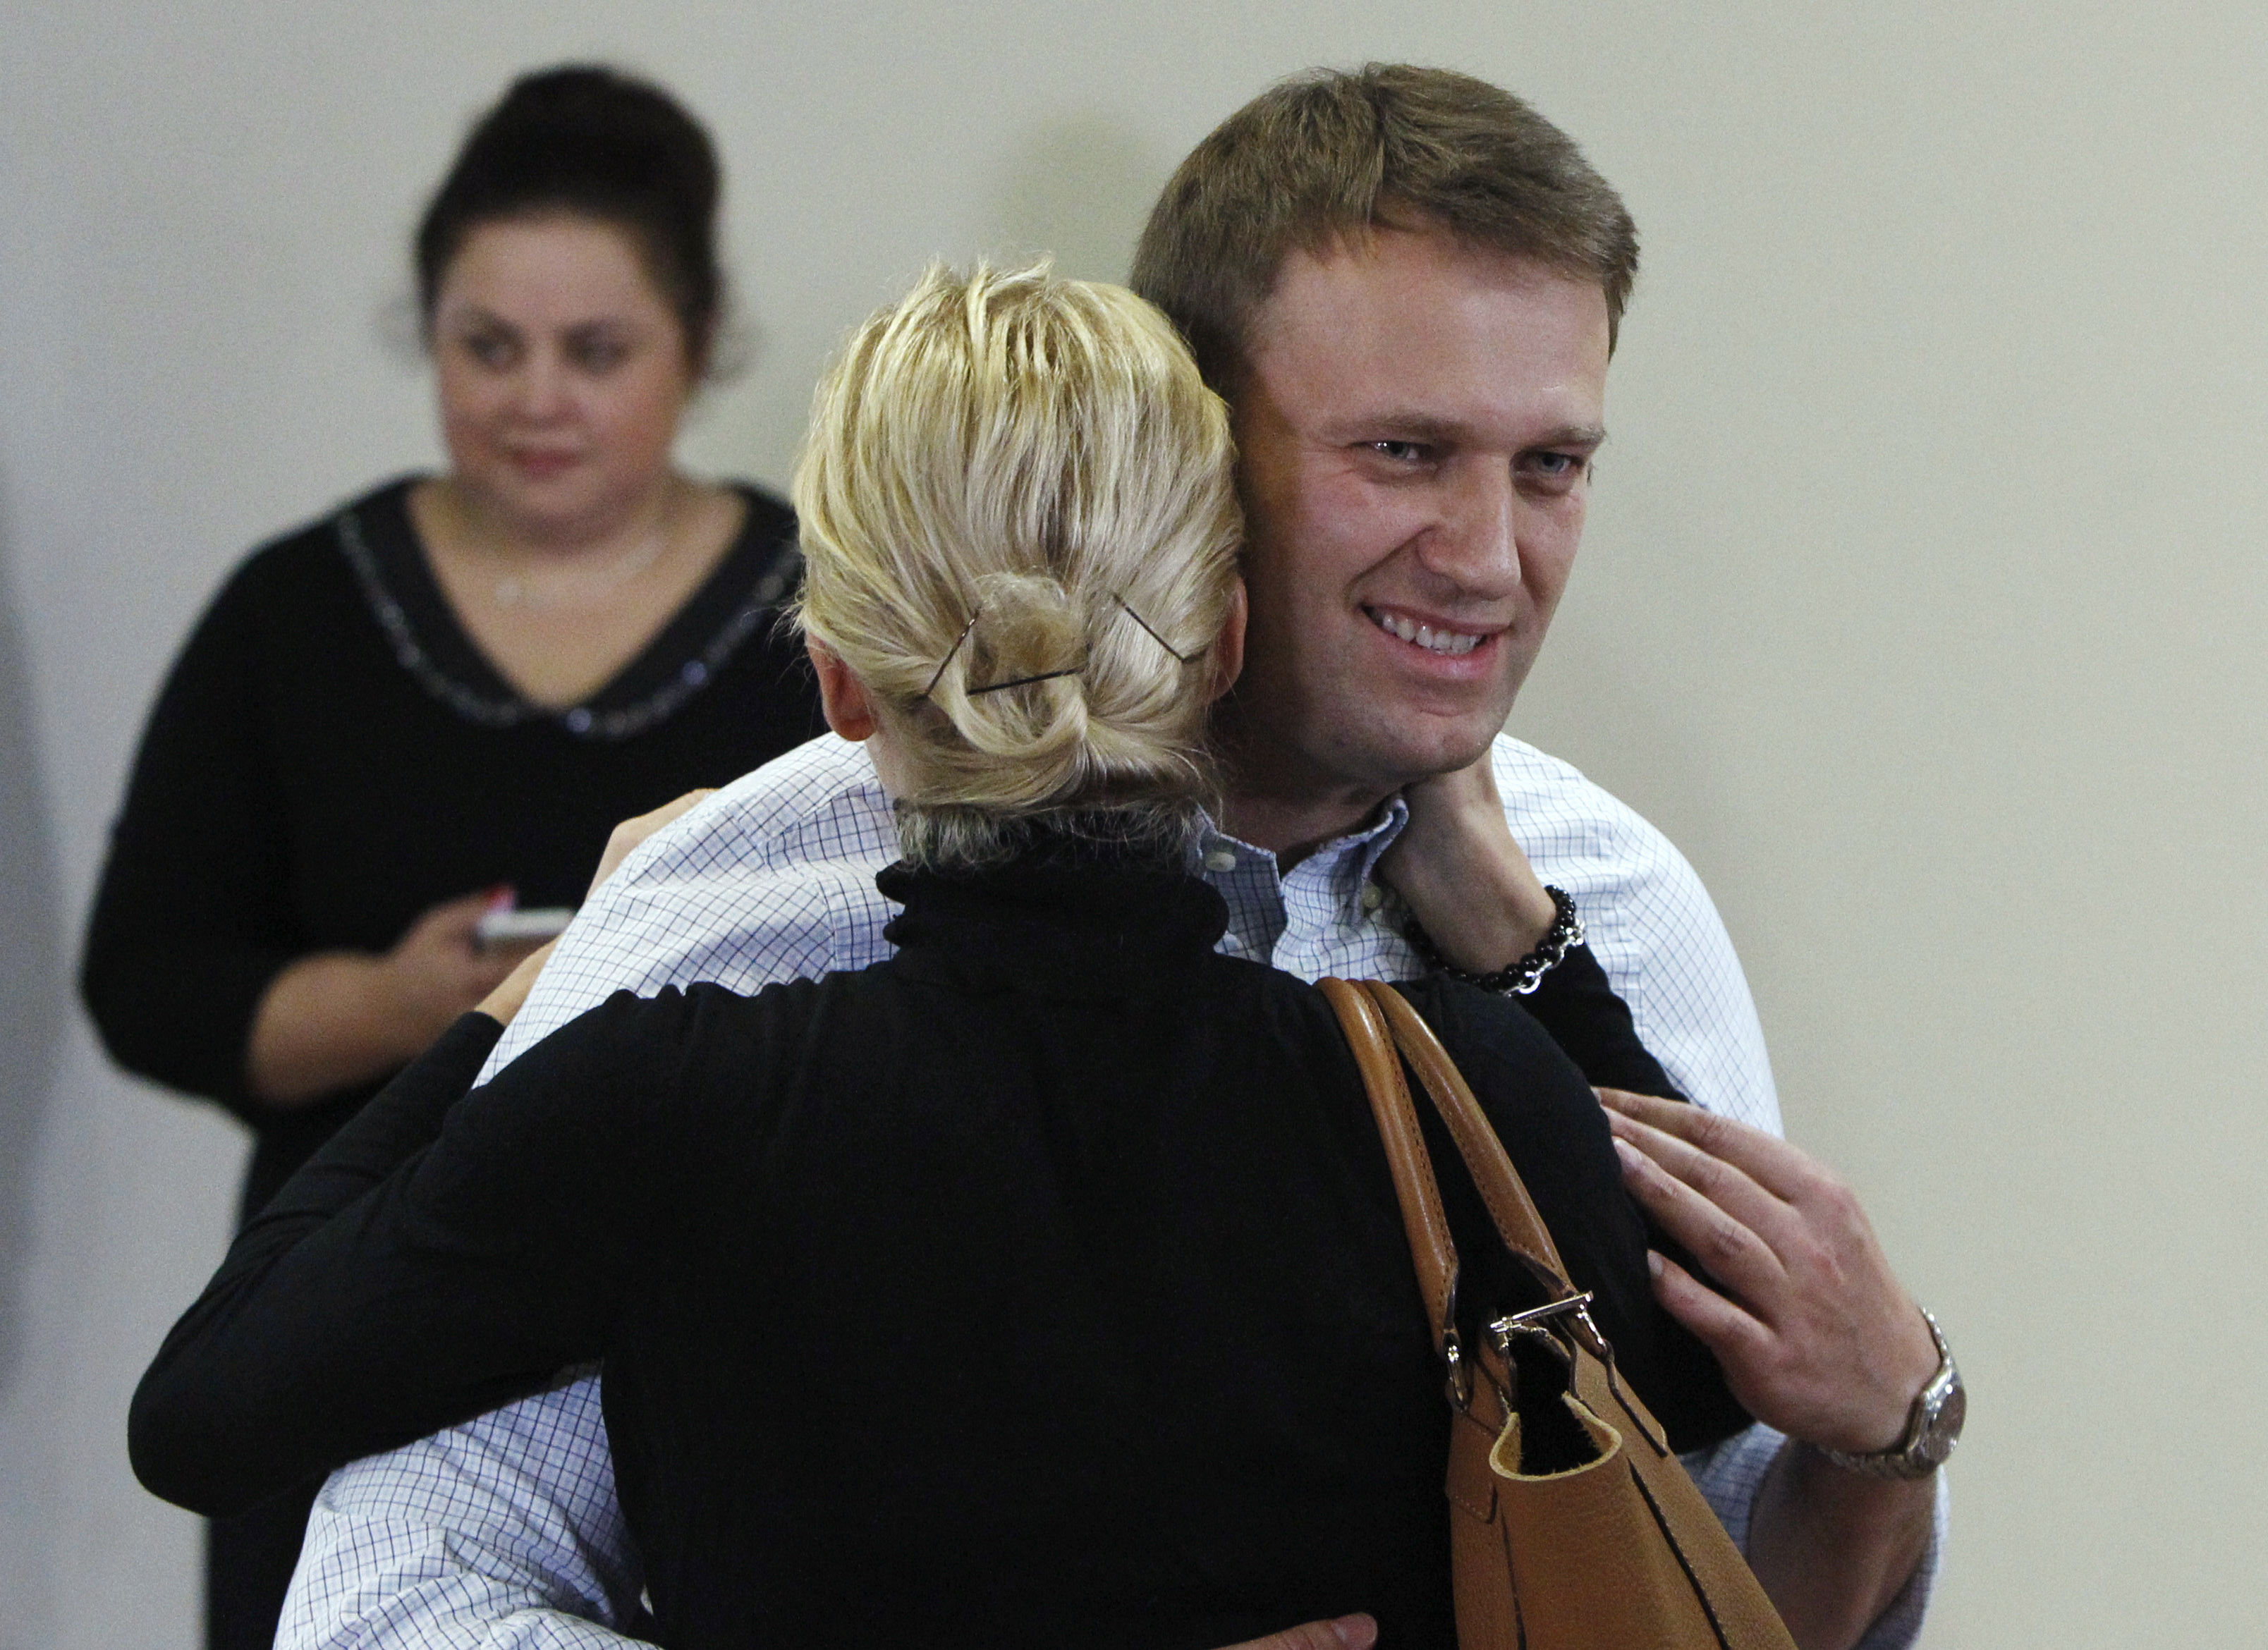 Свадьба навального